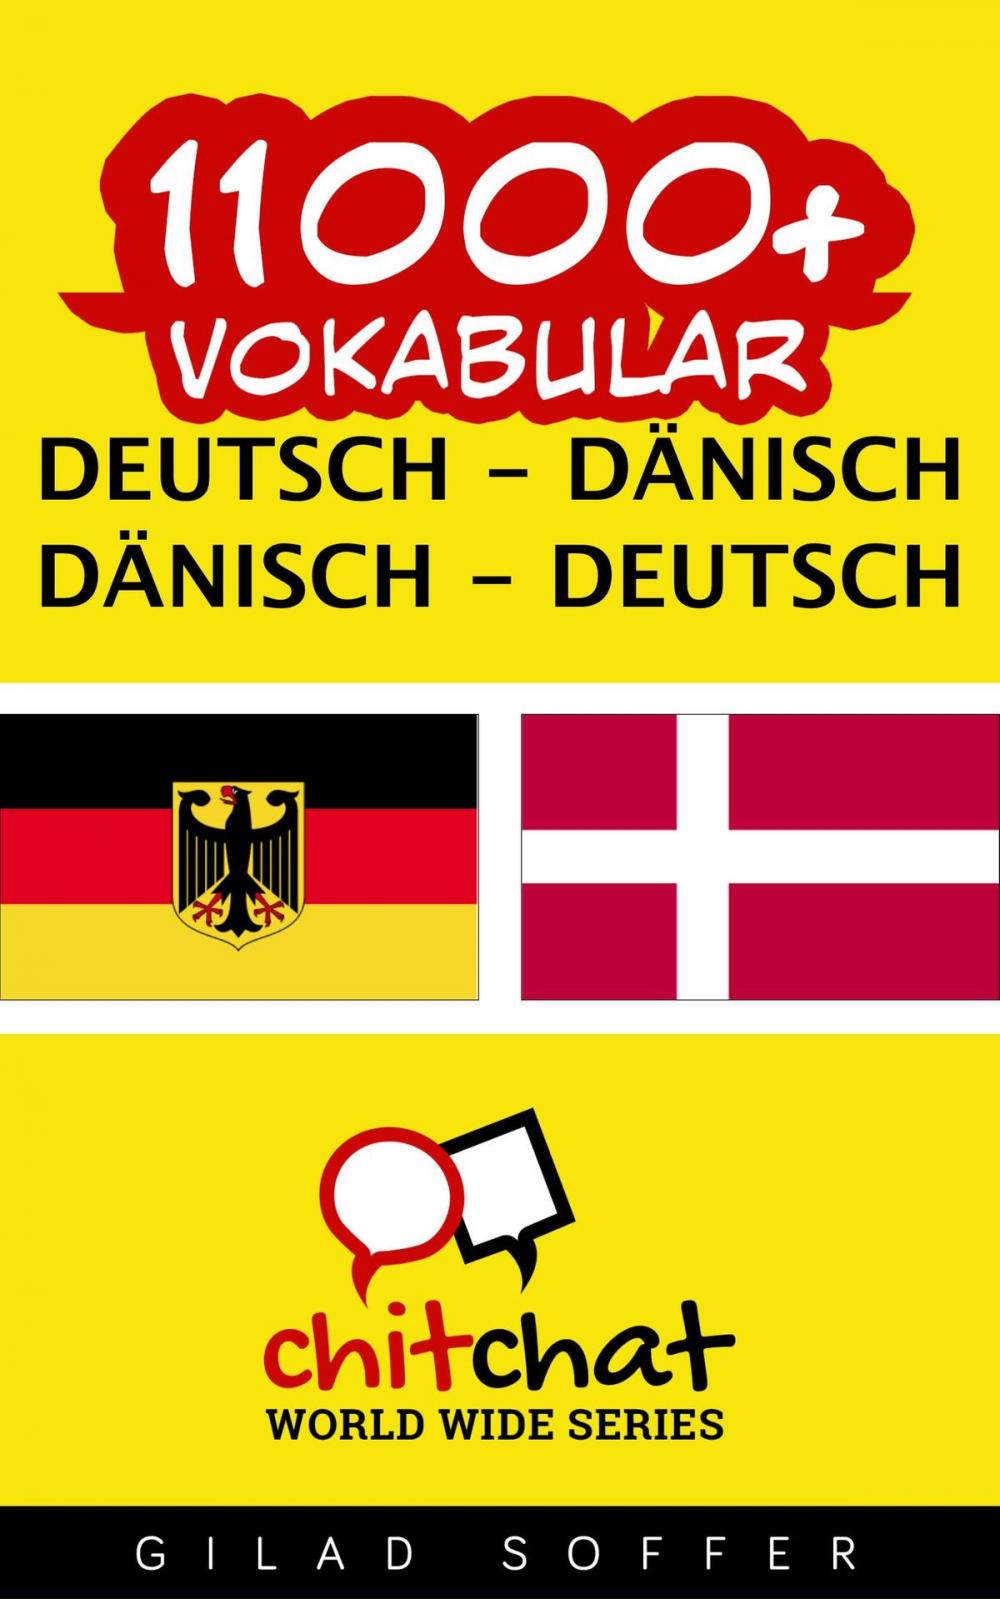 Big bigCover of 11000+ Vokabular Deutsch - Dänisch